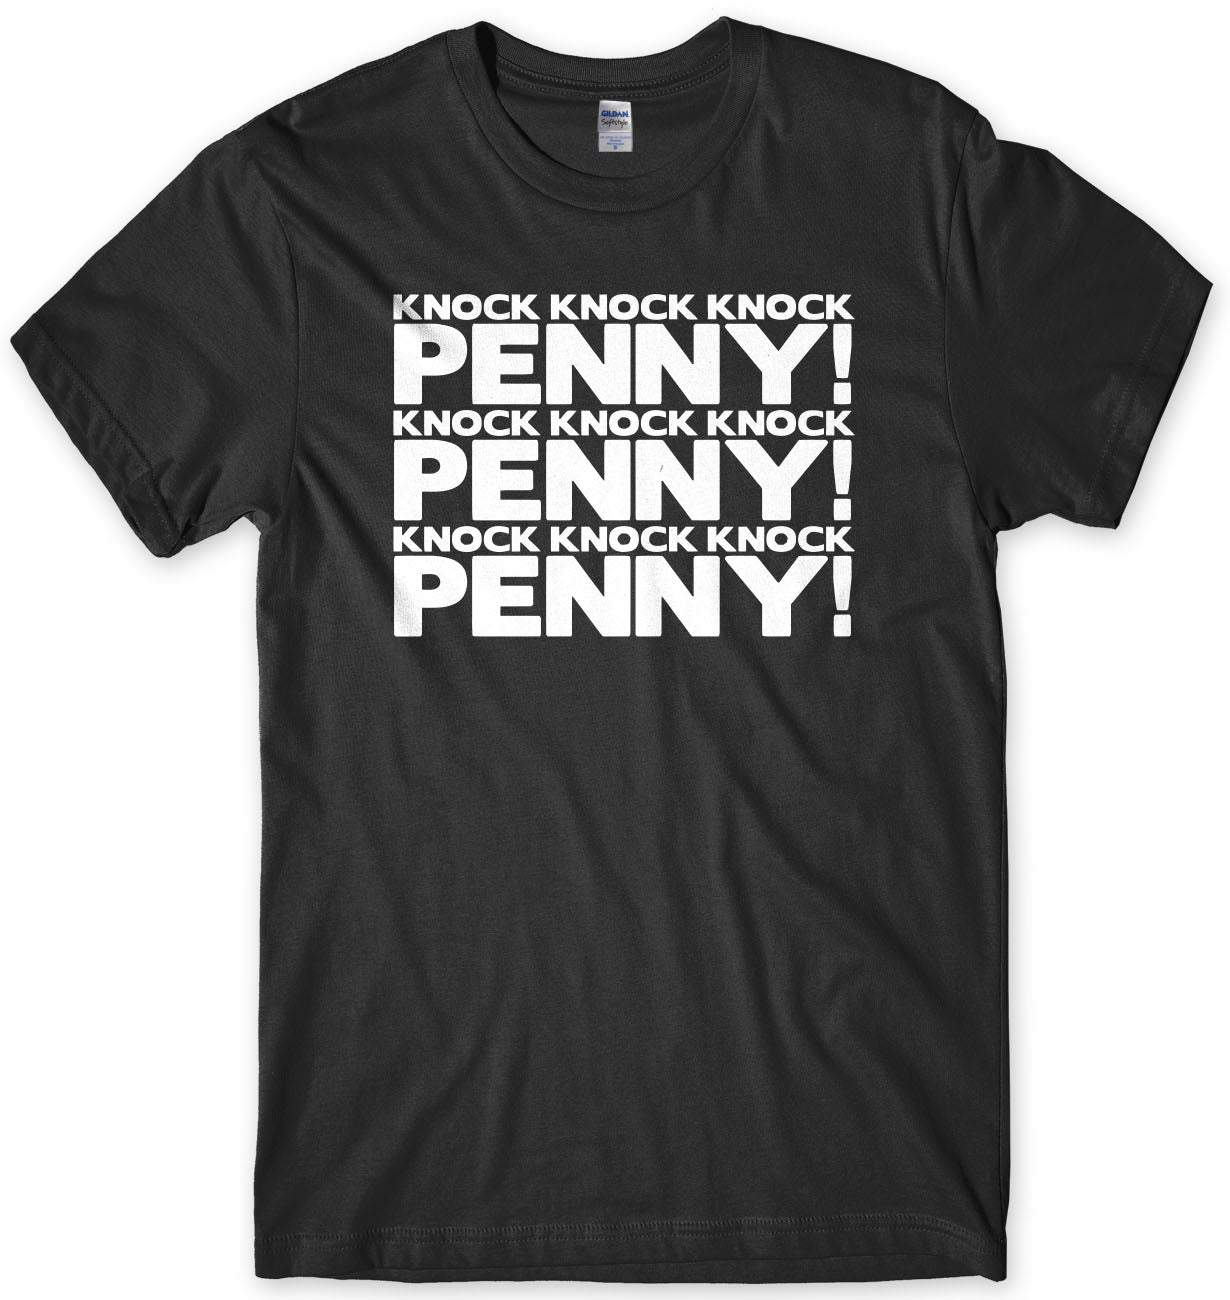 Nock Nock Penny Sheldon Cooper Inspired Mens T-Shirt